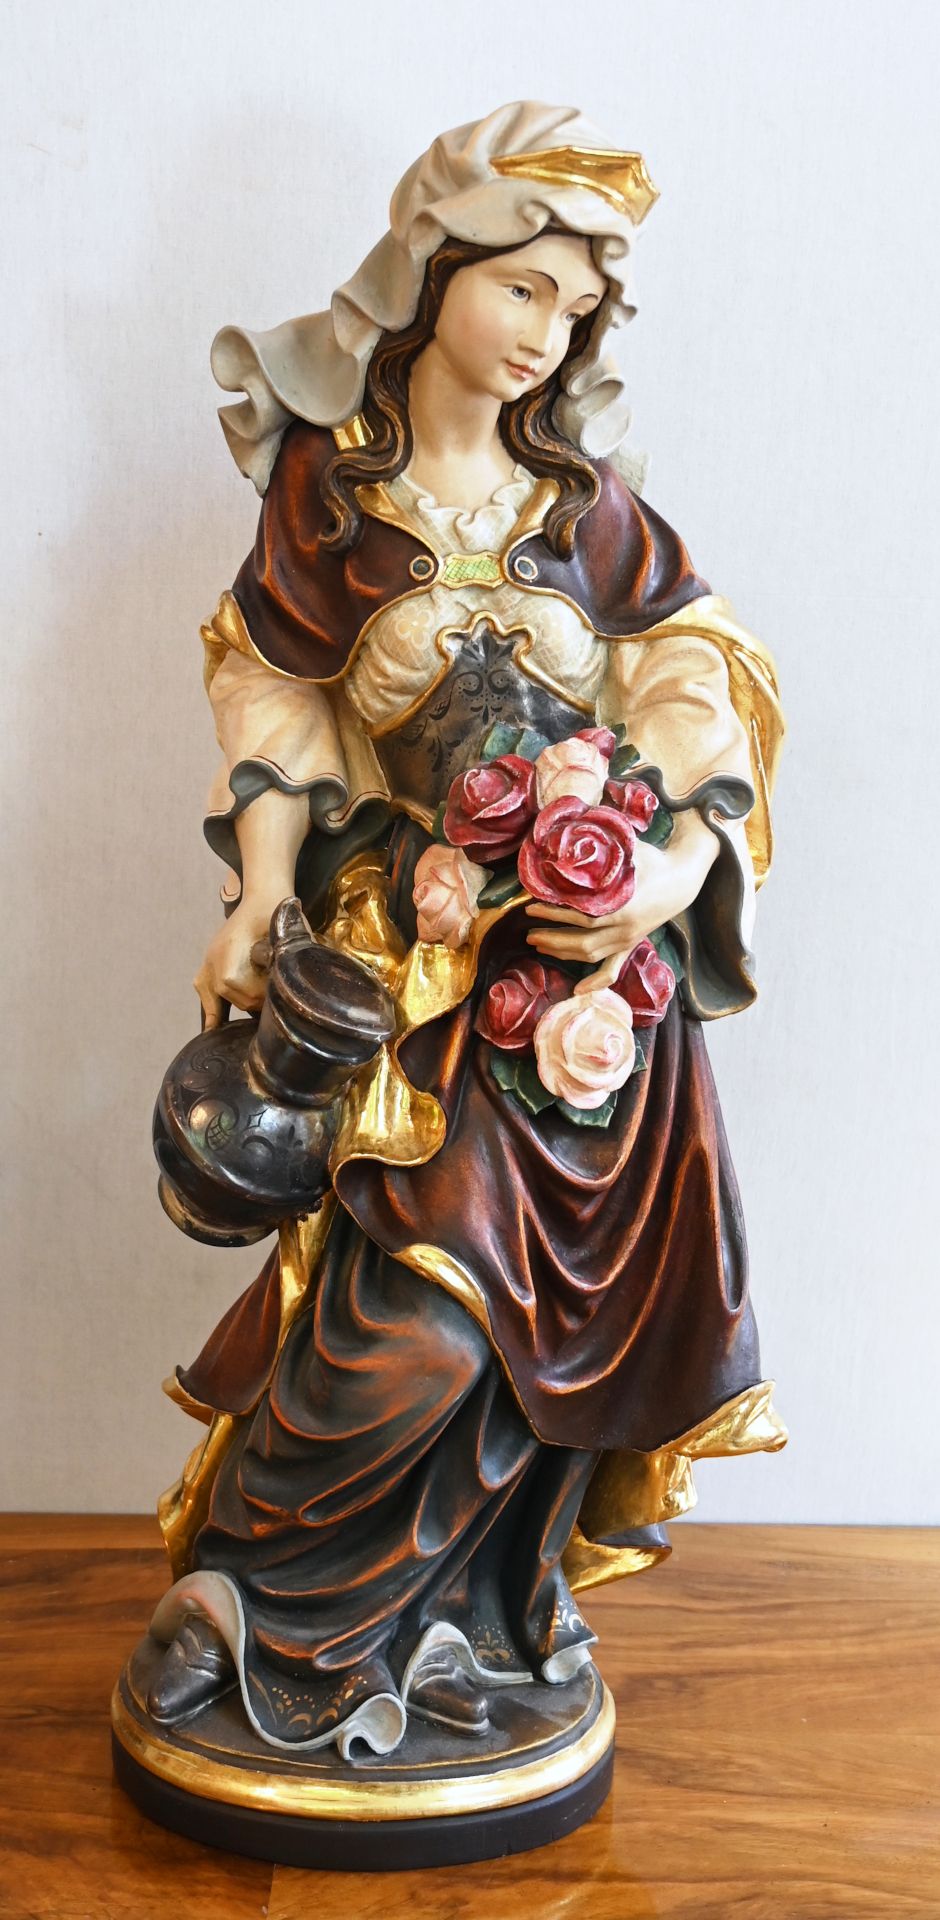 1 Holzfigur am Boden bez. C. NOCKER "Heilige Elisabeth mit Rosen" farbig gefasst, H ca. 80cm, min. b